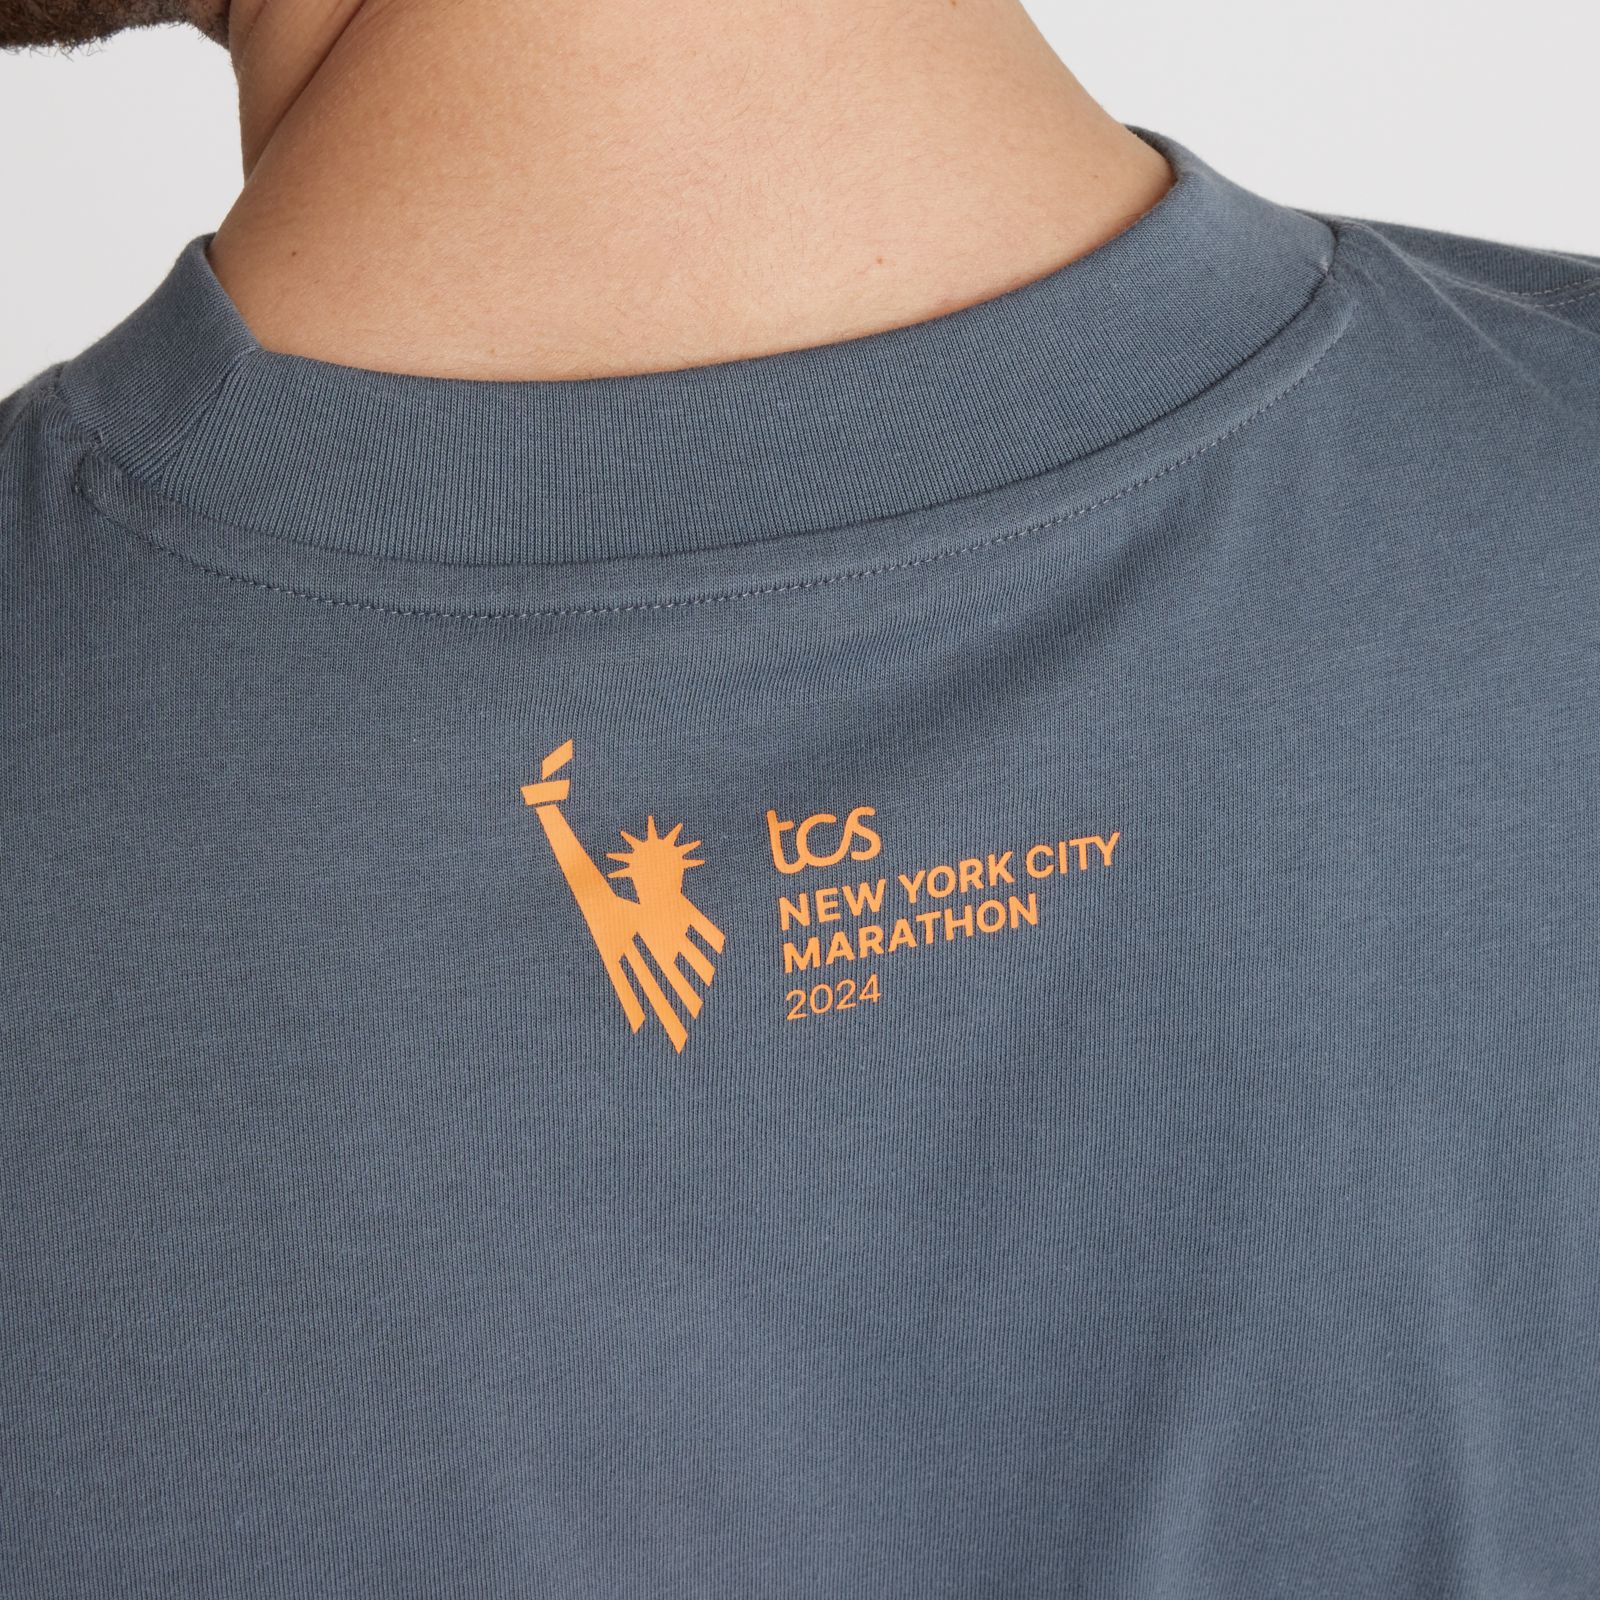 TCS New York City Marathon Training Graphic T-Shirt